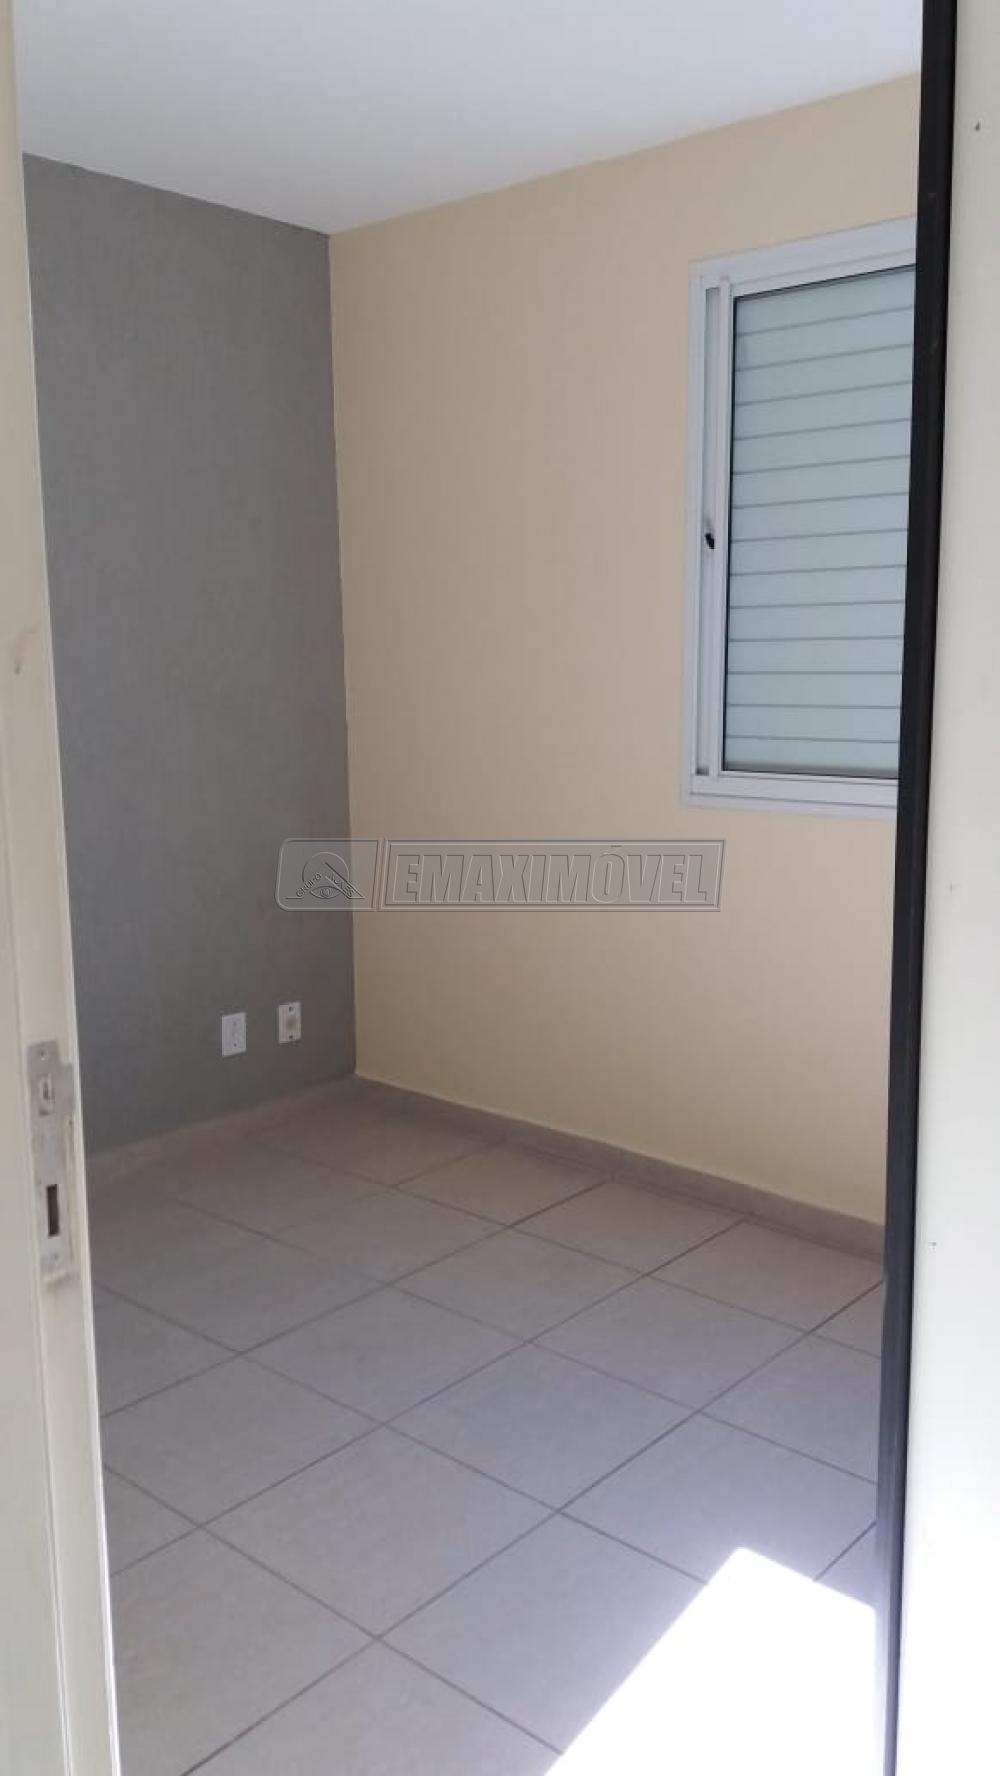 Comprar Apartamento / Padrão em Sorocaba R$ 169.000,00 - Foto 5